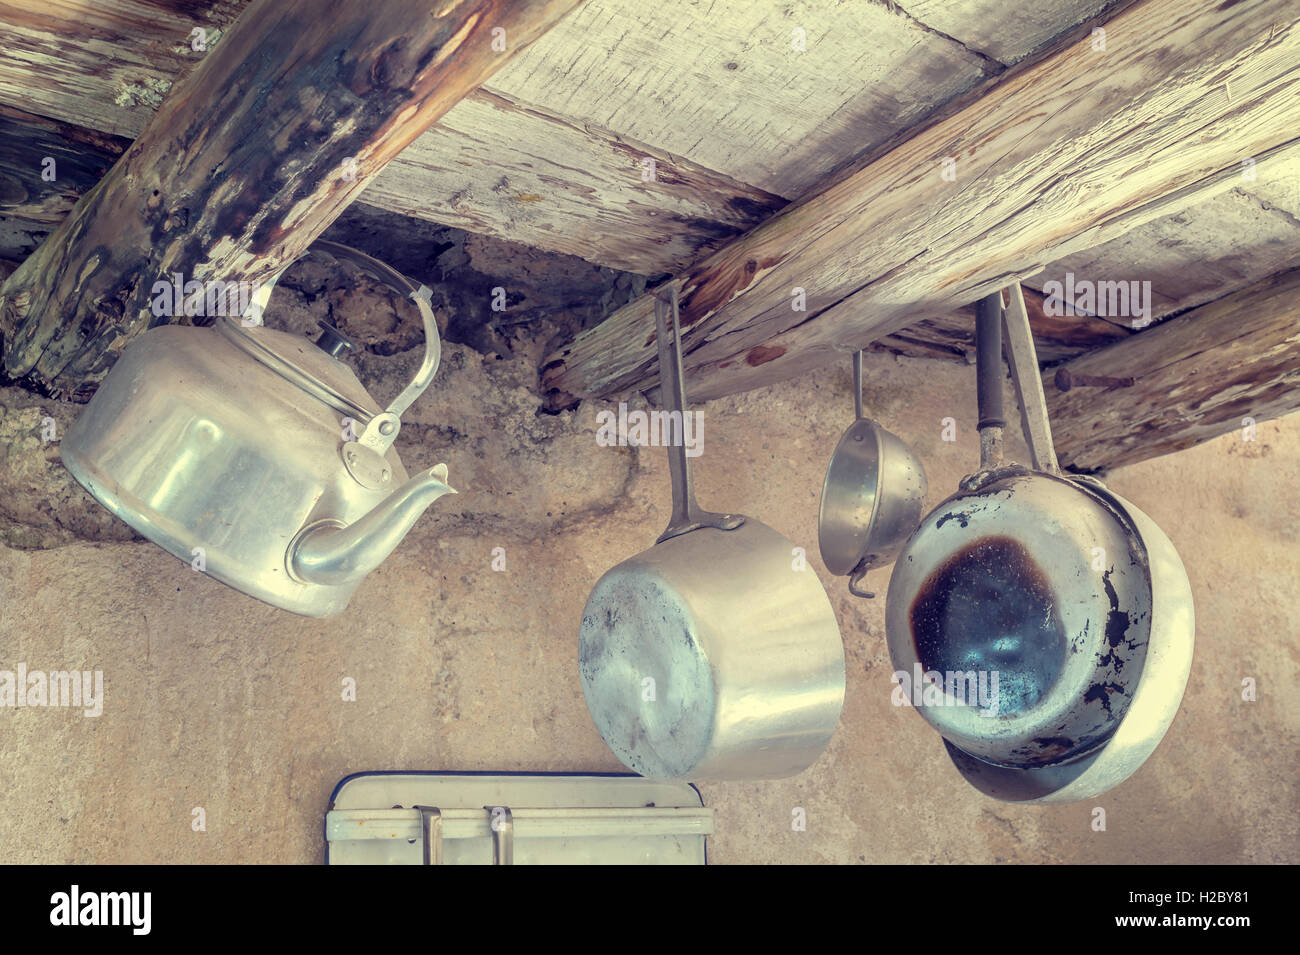 Ustensiles de cuisine anciens en aluminium. La pendaison de vieilles poutres en bois, poêles, tamis, électrique. Dans les styles de photo vintage Banque D'Images